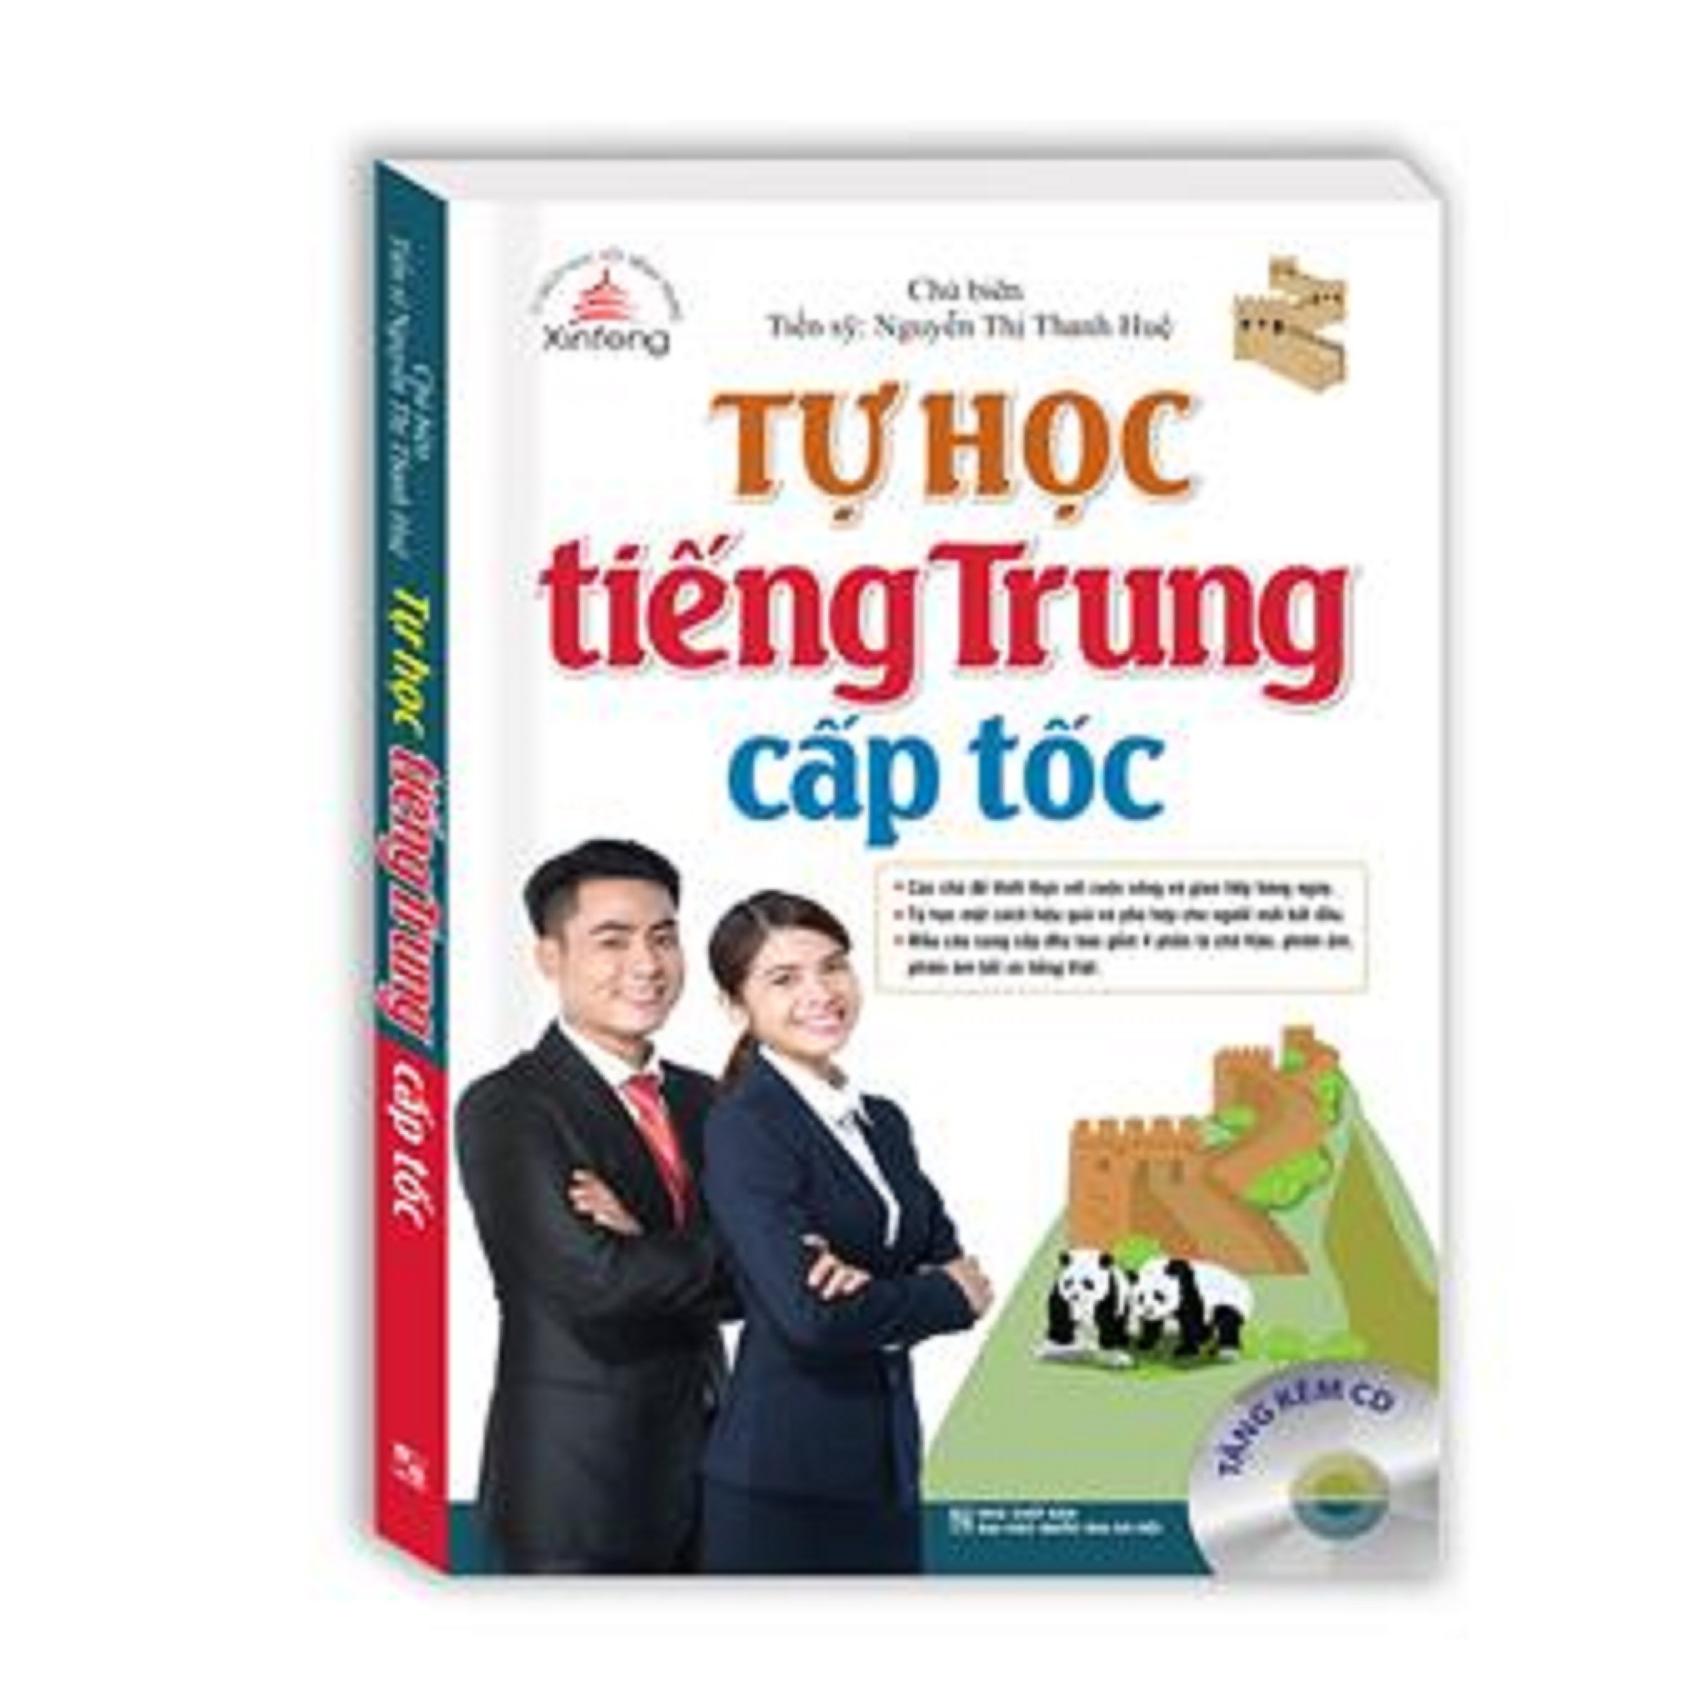 Xinfeng - Tự học tiếng Trung cấp tốc (bản màu kèm CD)